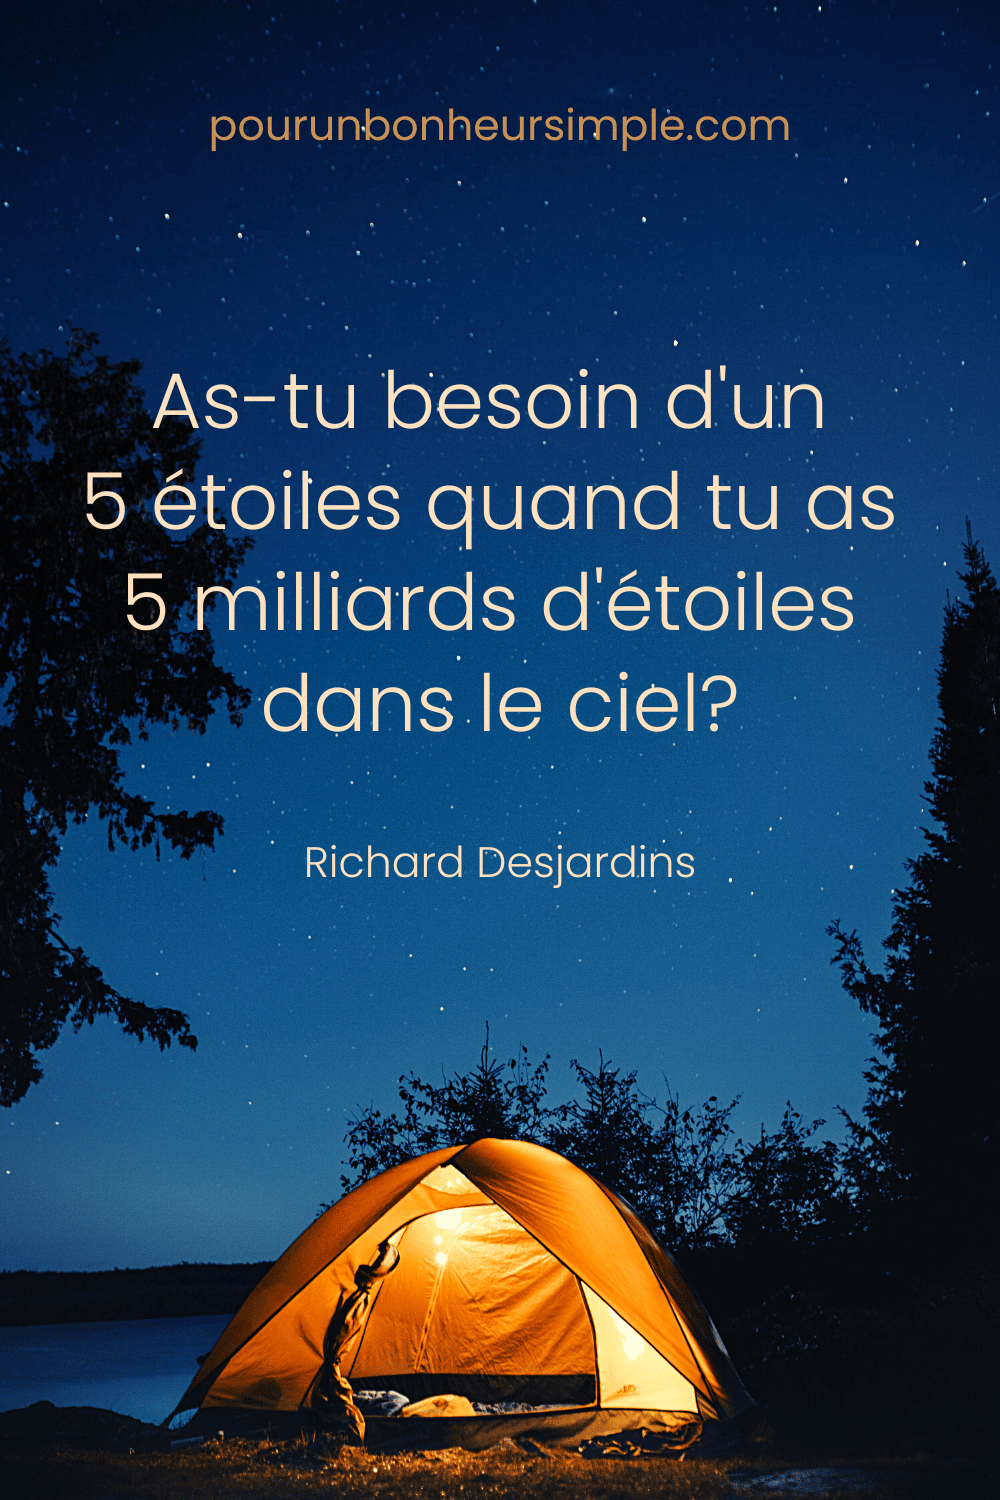 J'adore cette citation du chanteur-compositeur québécois Richard Desjardins. Elle se lit comme suit: "As-tu besoin d'un 5 étoiles quand tu as 5 milliards d'étoiles dans le ciel?". Un visuel du blog Pour un bonheur simple.